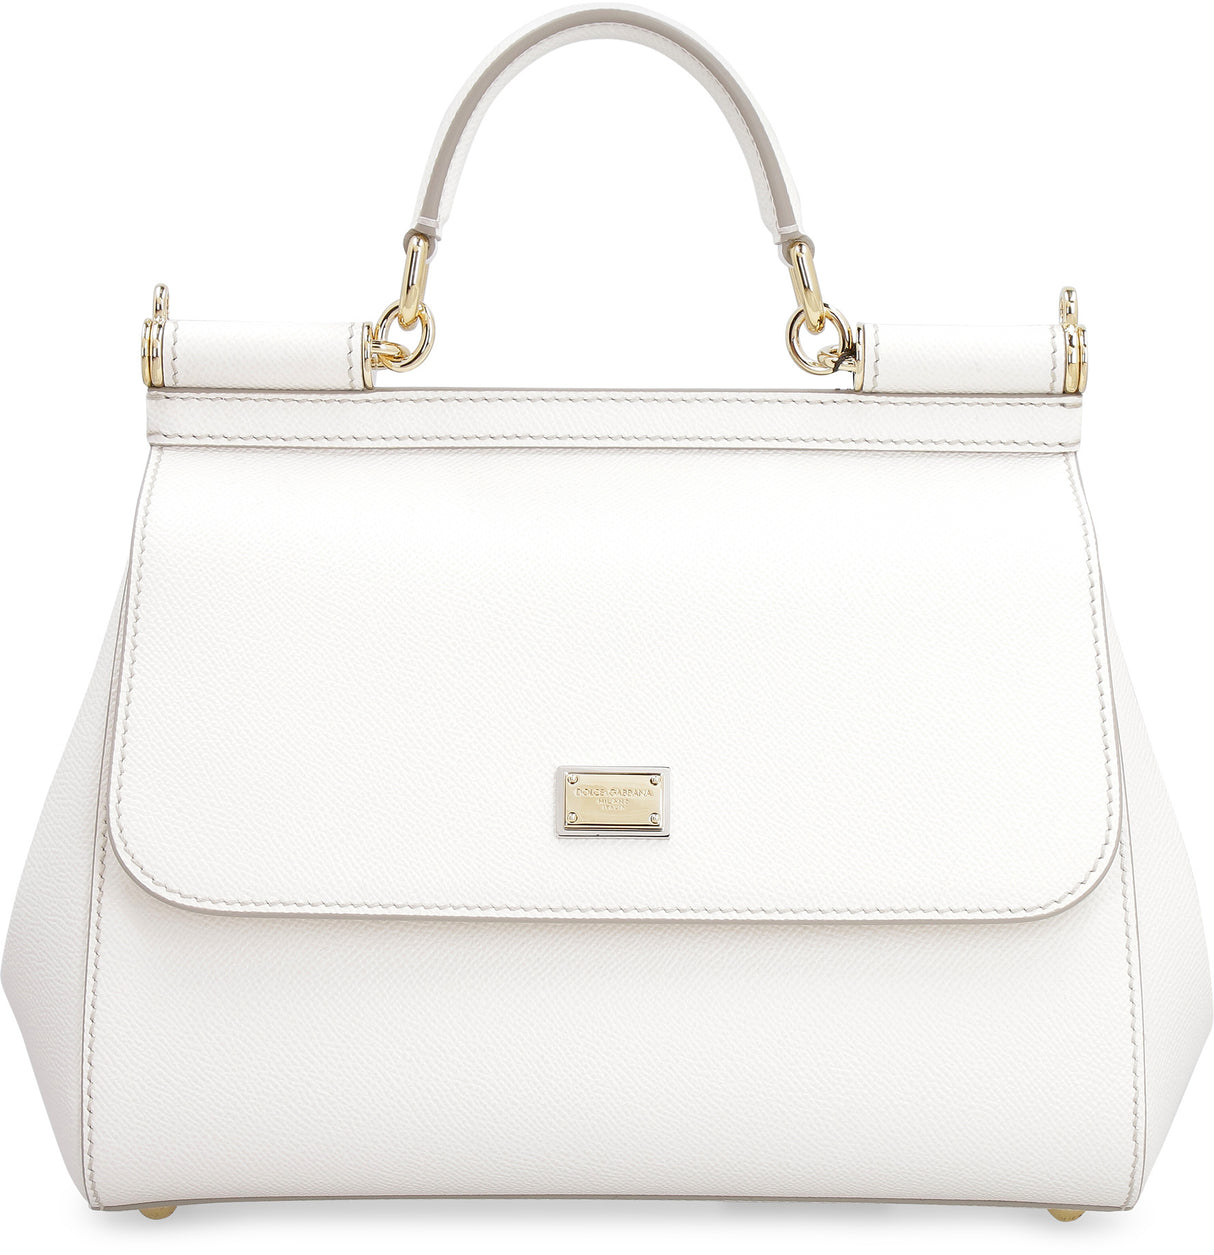 حقيبة يد أنيقة باللون الأبيض للنساء - حجم متوسط مع حزام قابل للتعديل